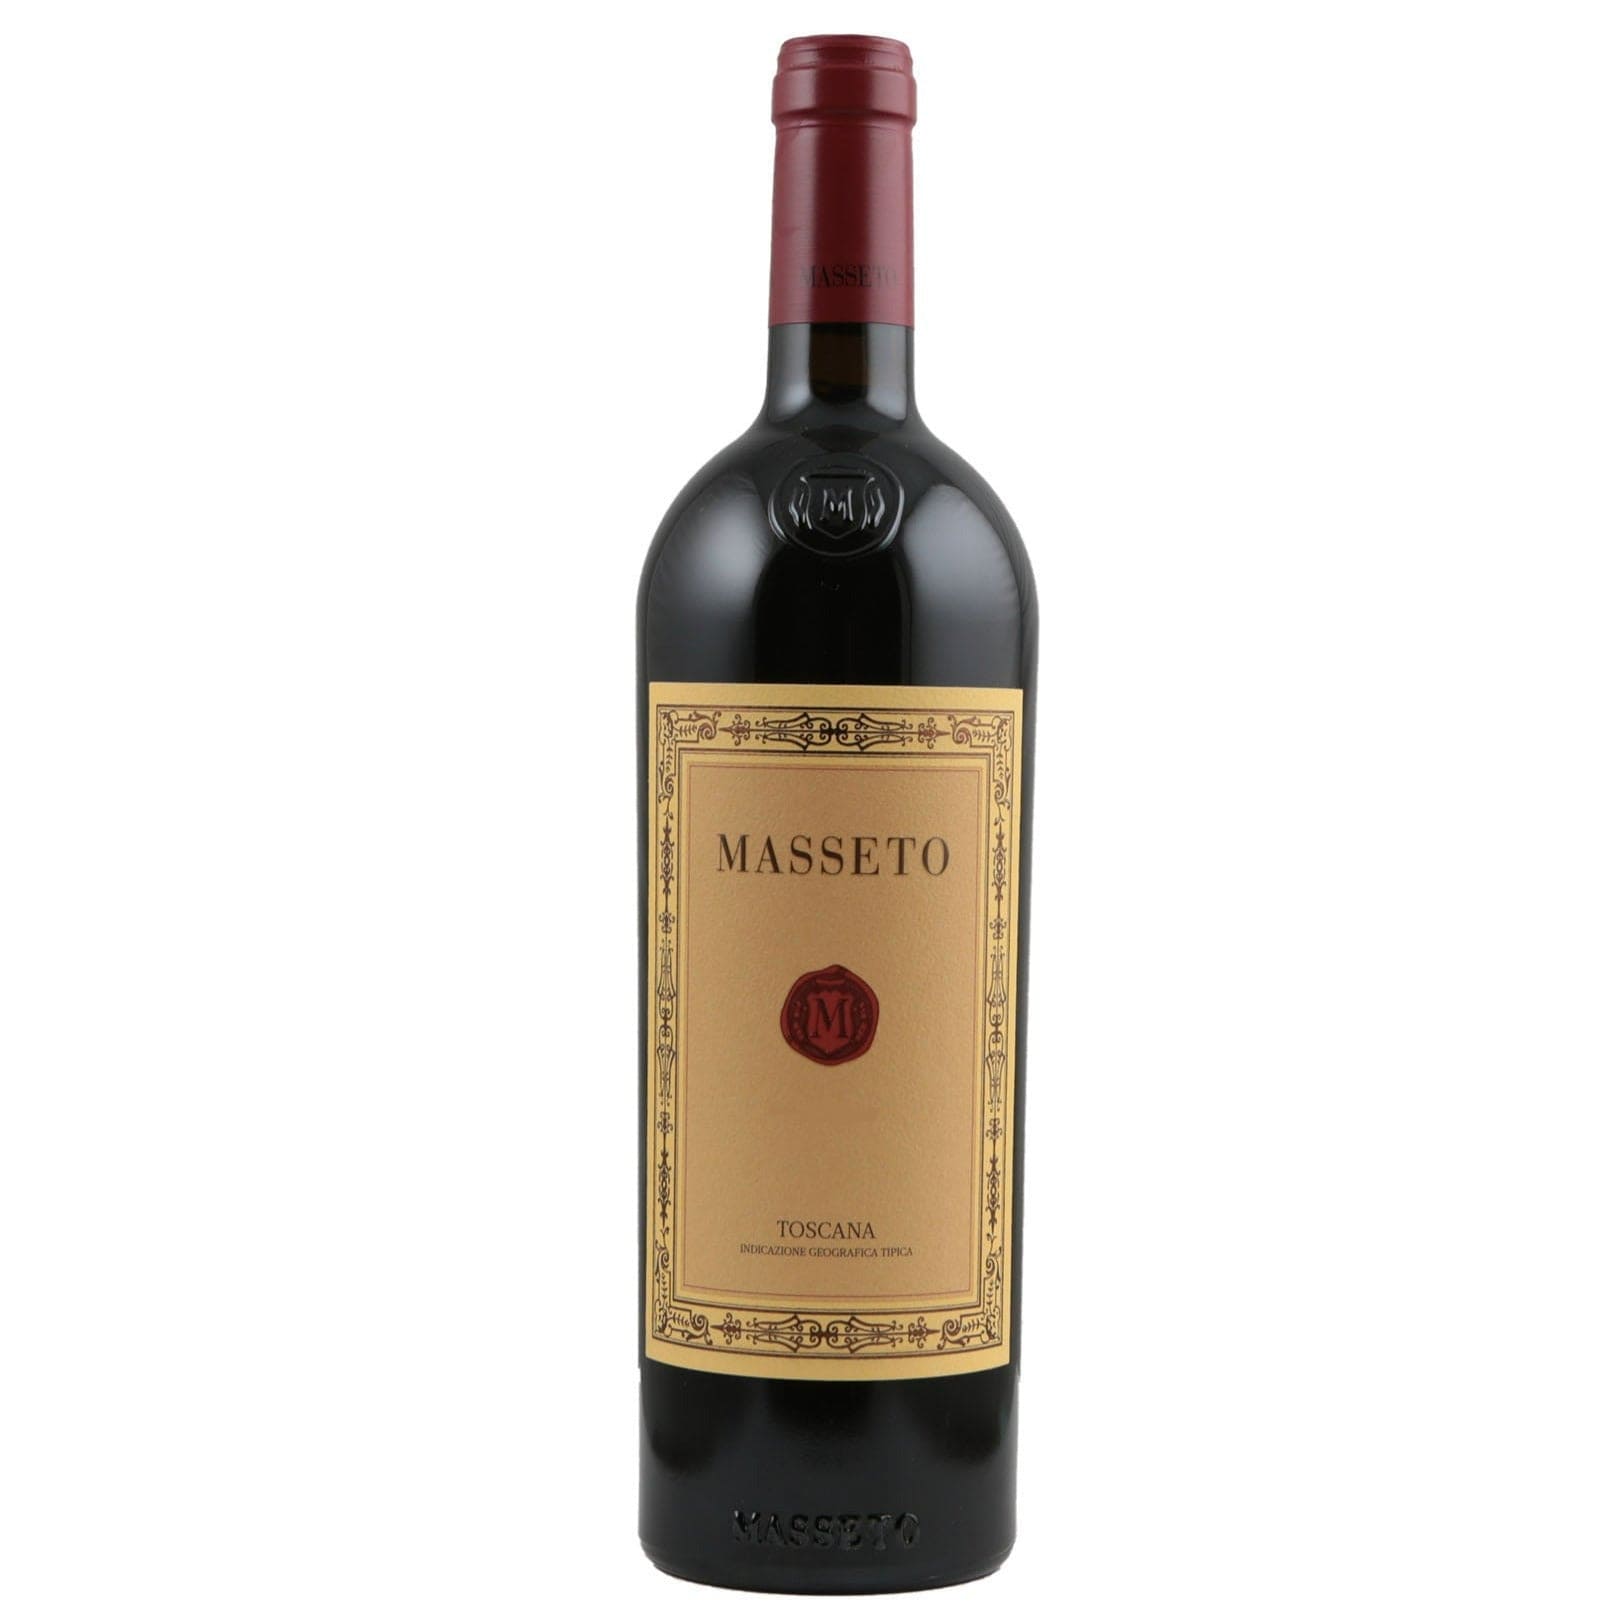 Single bottle of Red wine Masseto, Masseto, Toscana IGT, 2013 100% Merlot